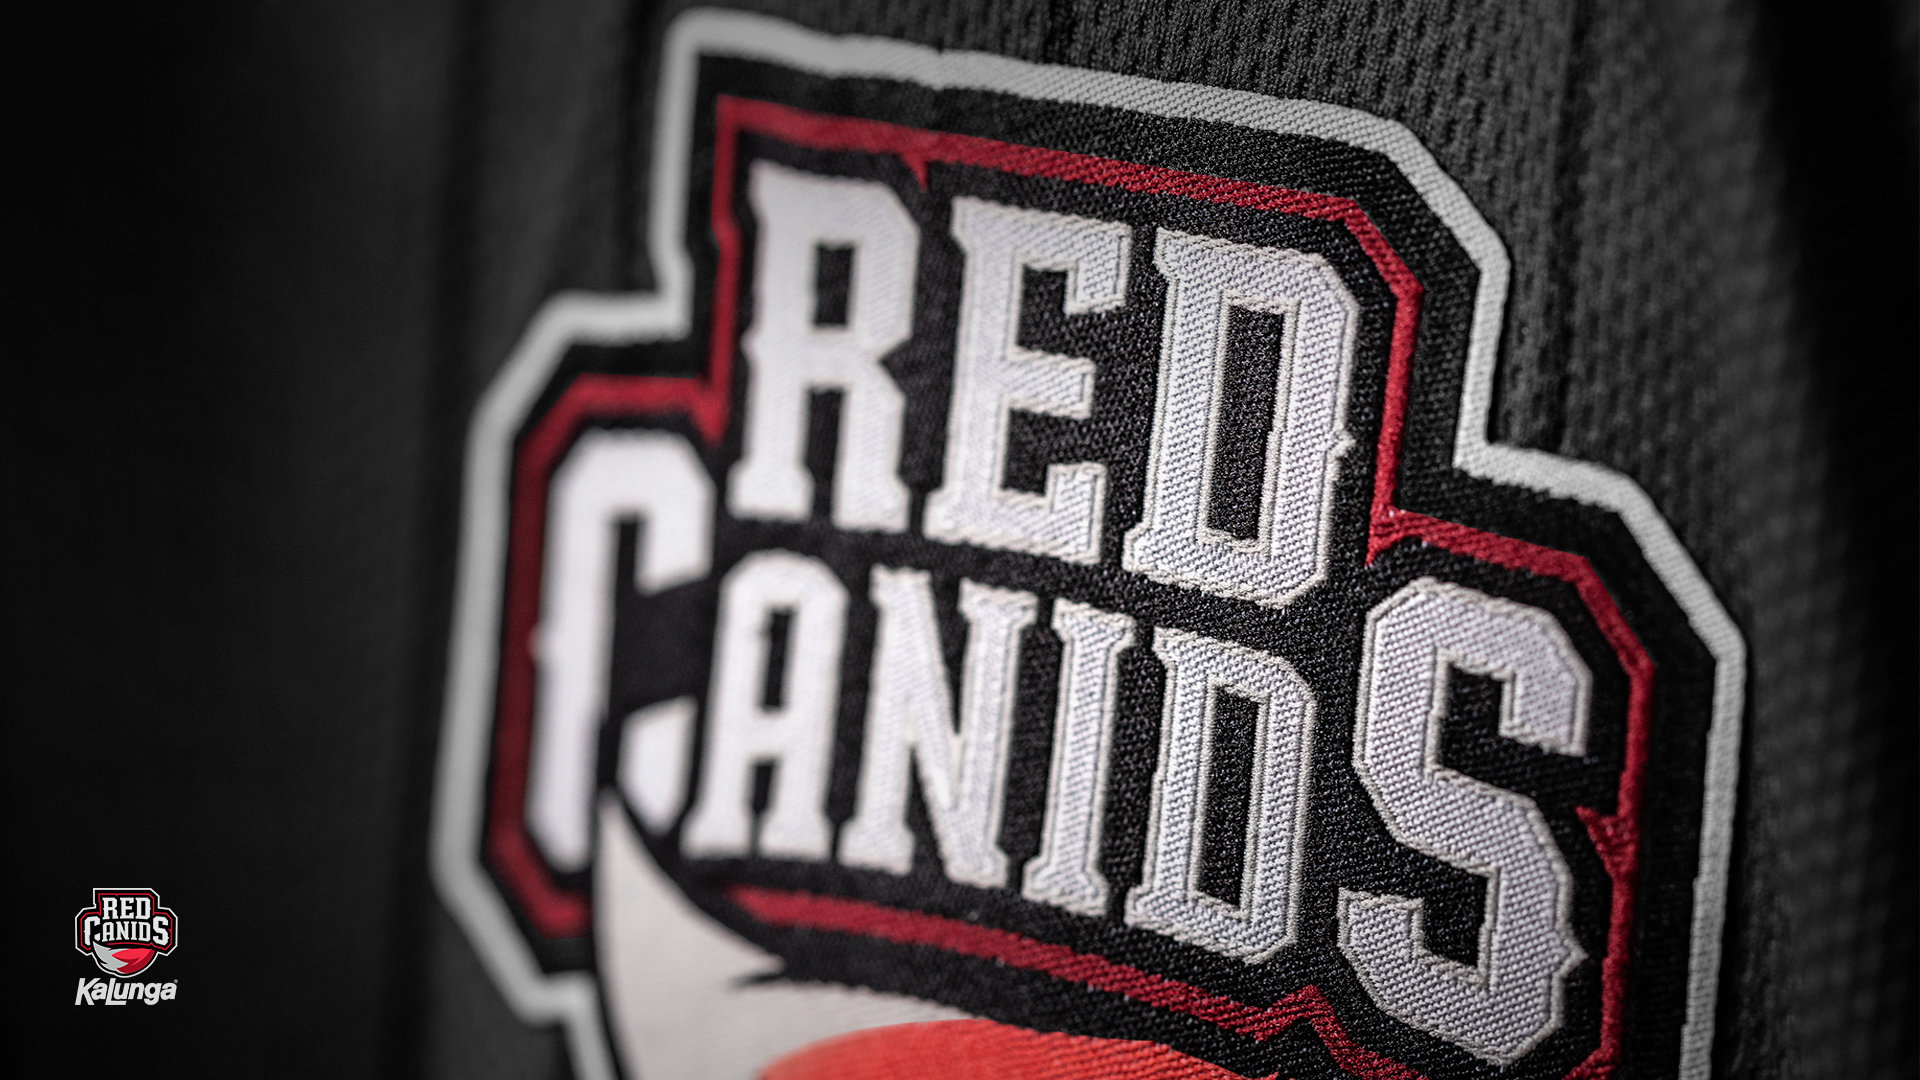 RED Canids Kalunga anuncia novas contratações para o CBLOL Academy